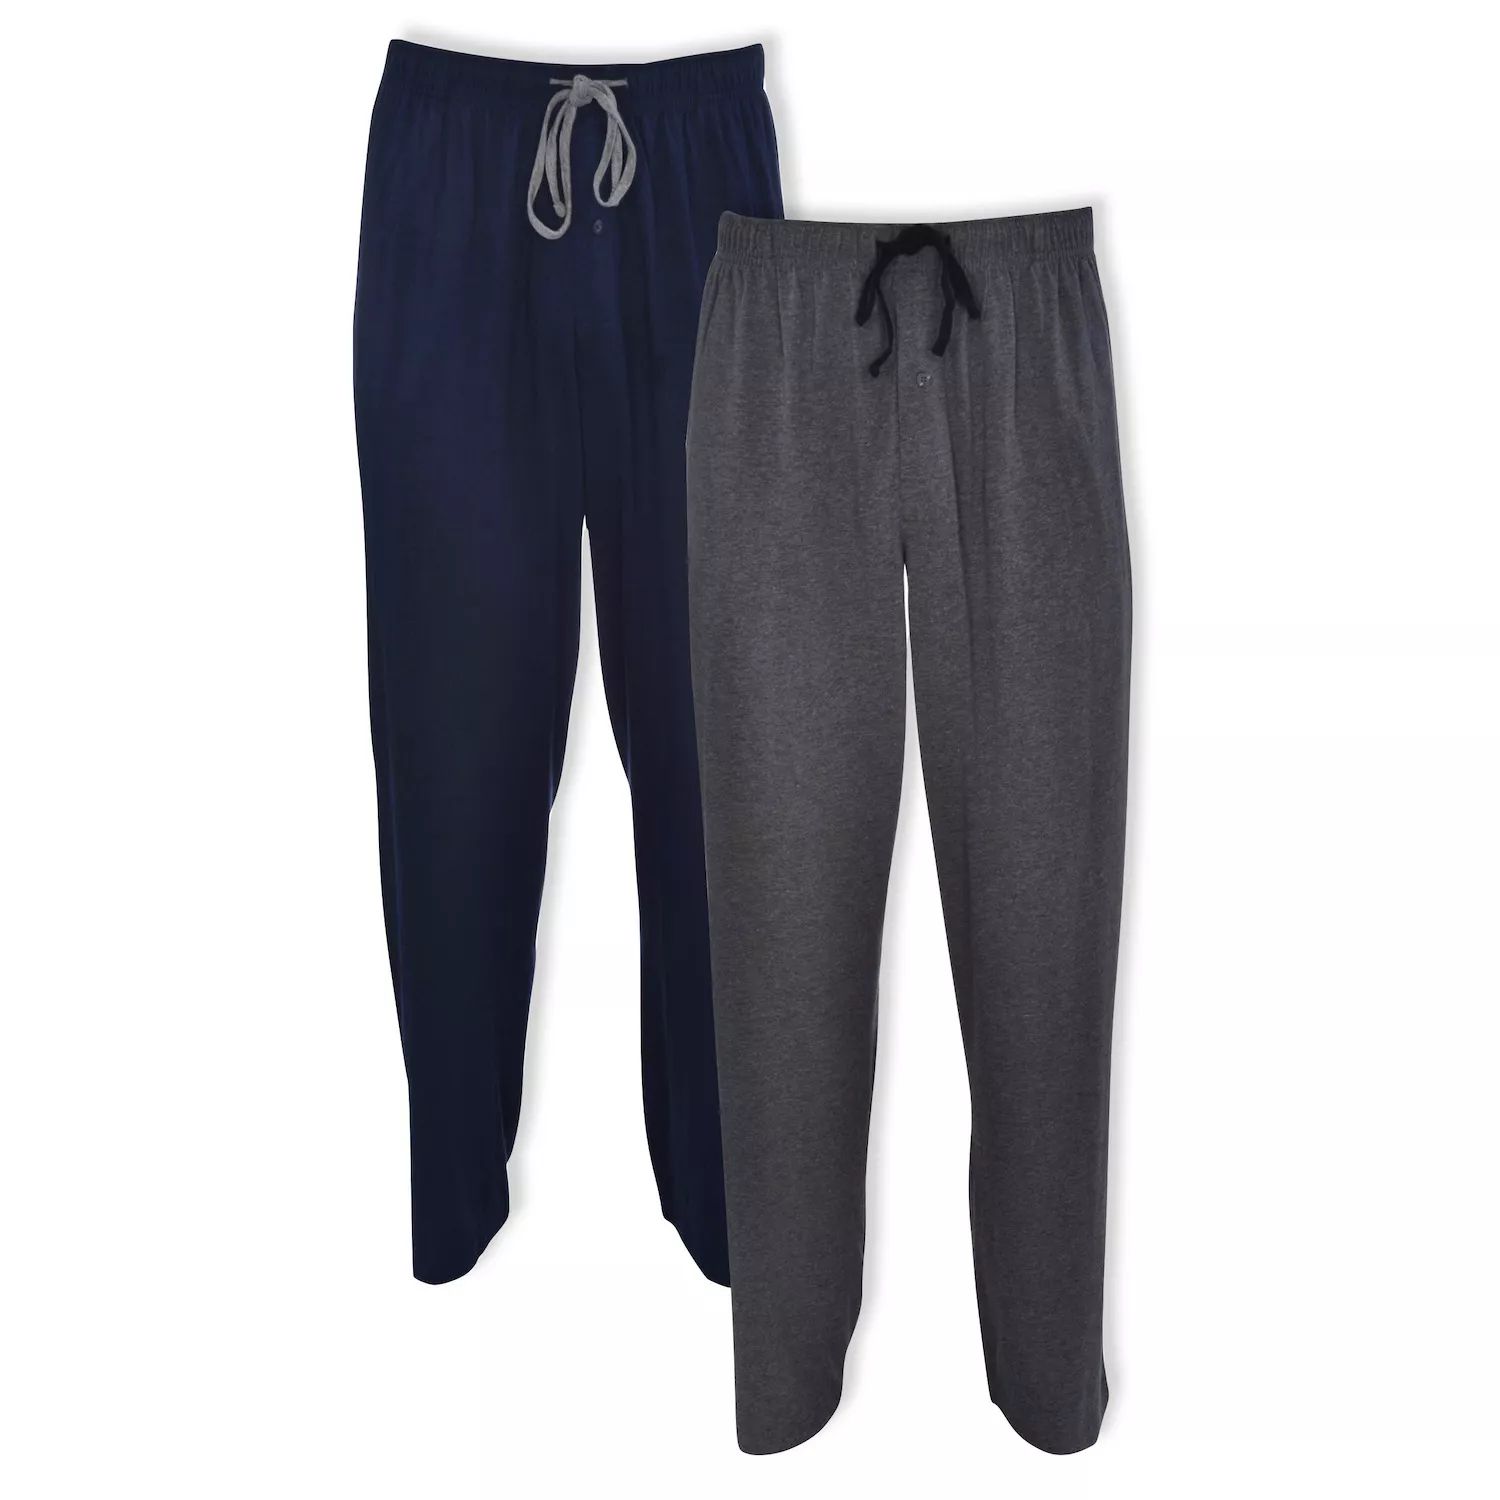 Комплект из 2 однотонных пижамных брюк Big & Tall Hanes комплект из четырех брюк пижамных из джерси 4 года 102 см синий